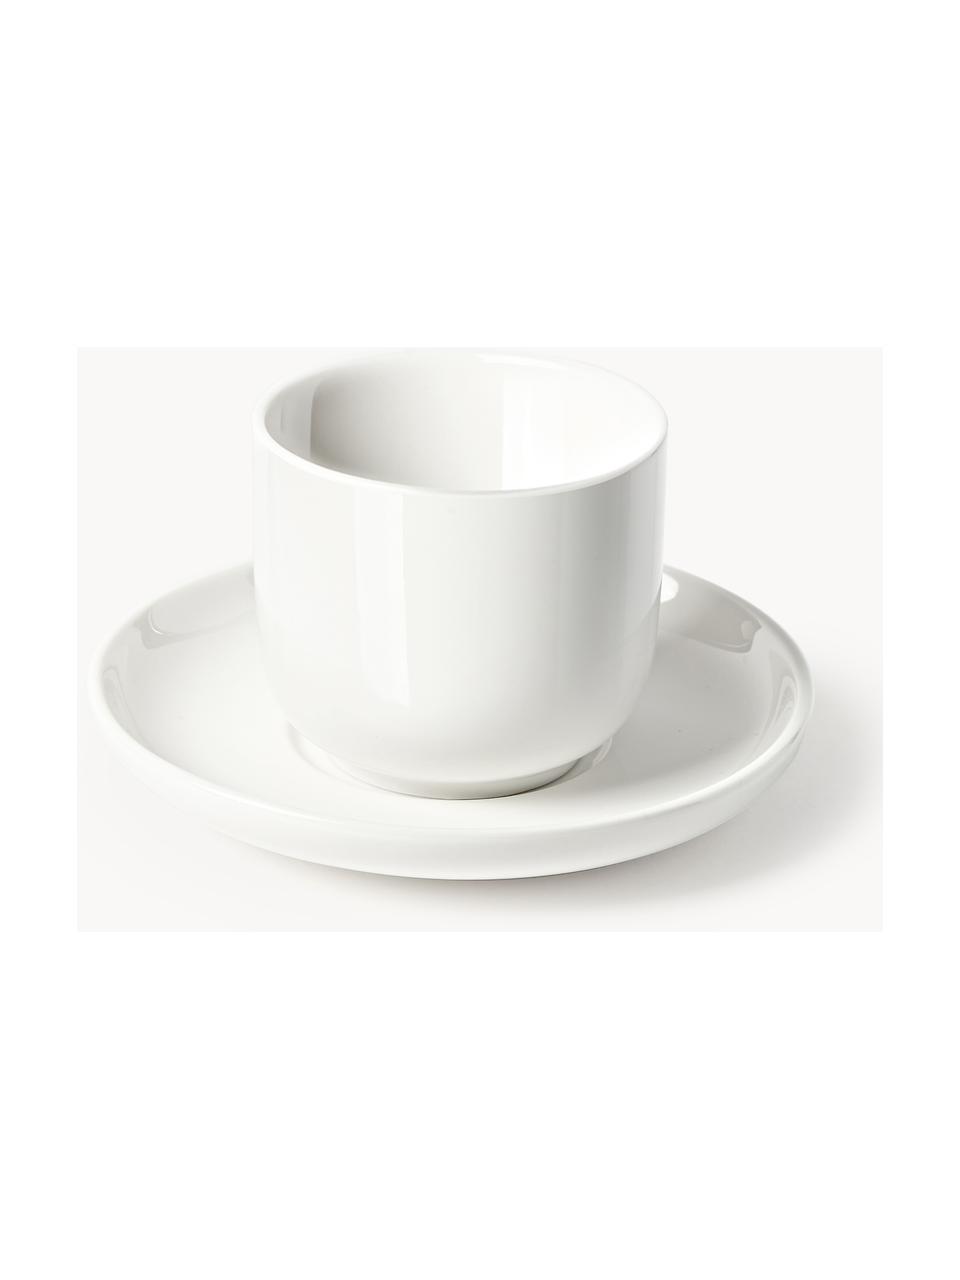 Porzellan-Espressobecher Nessa mit Untertassen, 4 Stück, Hochwertiges Hartporzellan, glasiert, Off White, glänzend, Ø 7 x H 6 cm, 90 ml